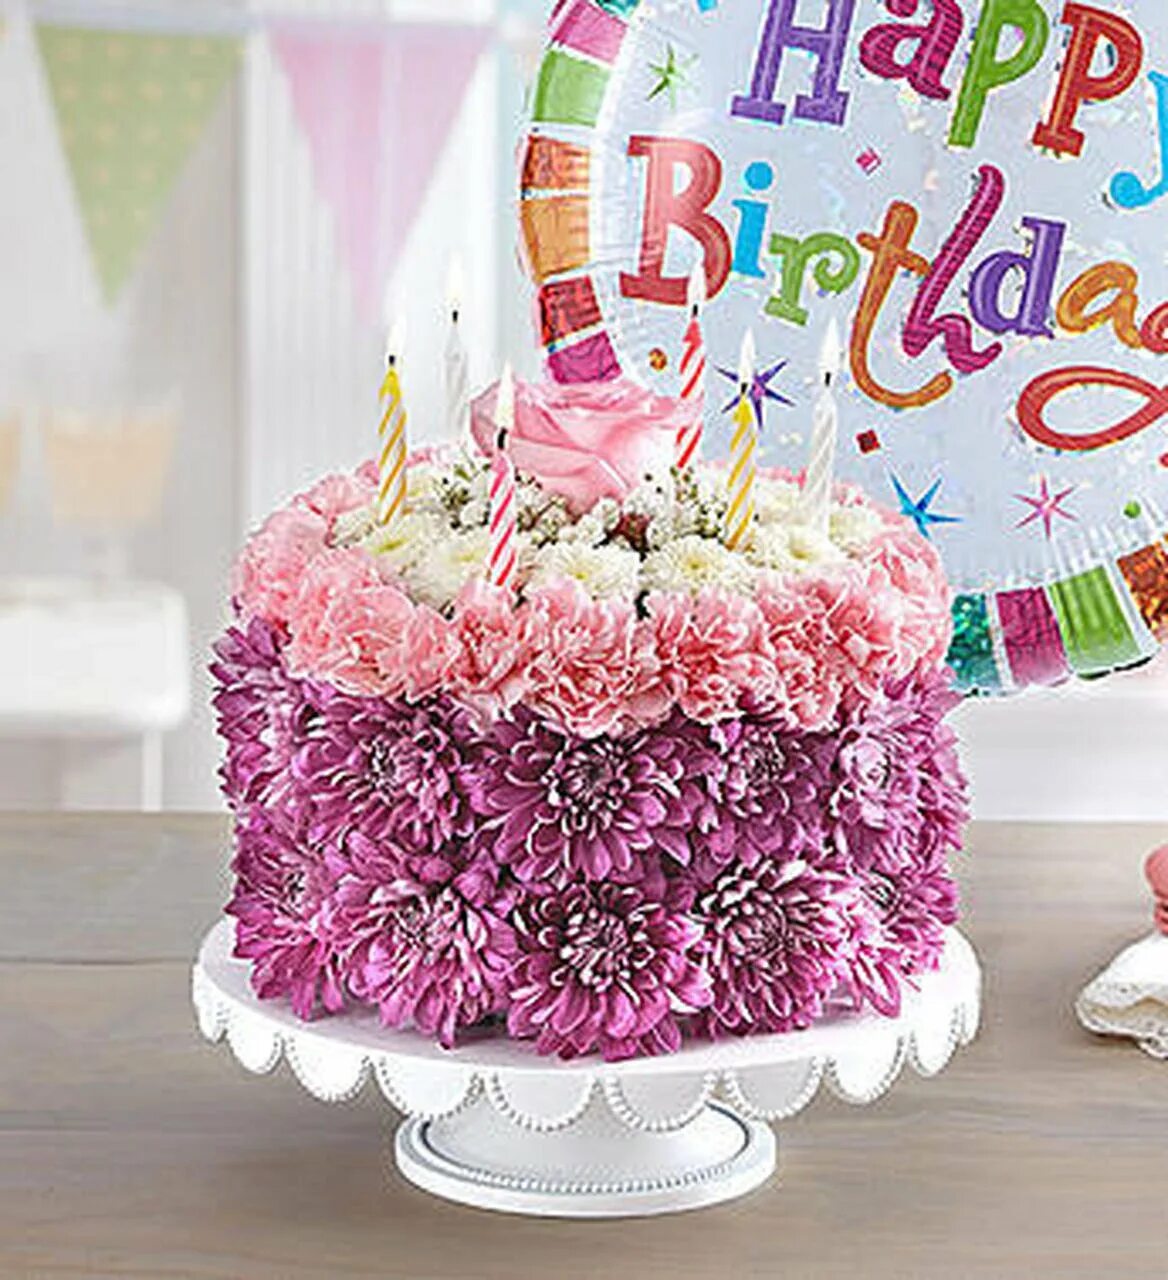 С днем рождения с тортом и шарами. Красивый букет и торт. Торт на день рождения с цветами. С днем рождения девушке цветы. Красивый букет цветов с днем рождения.